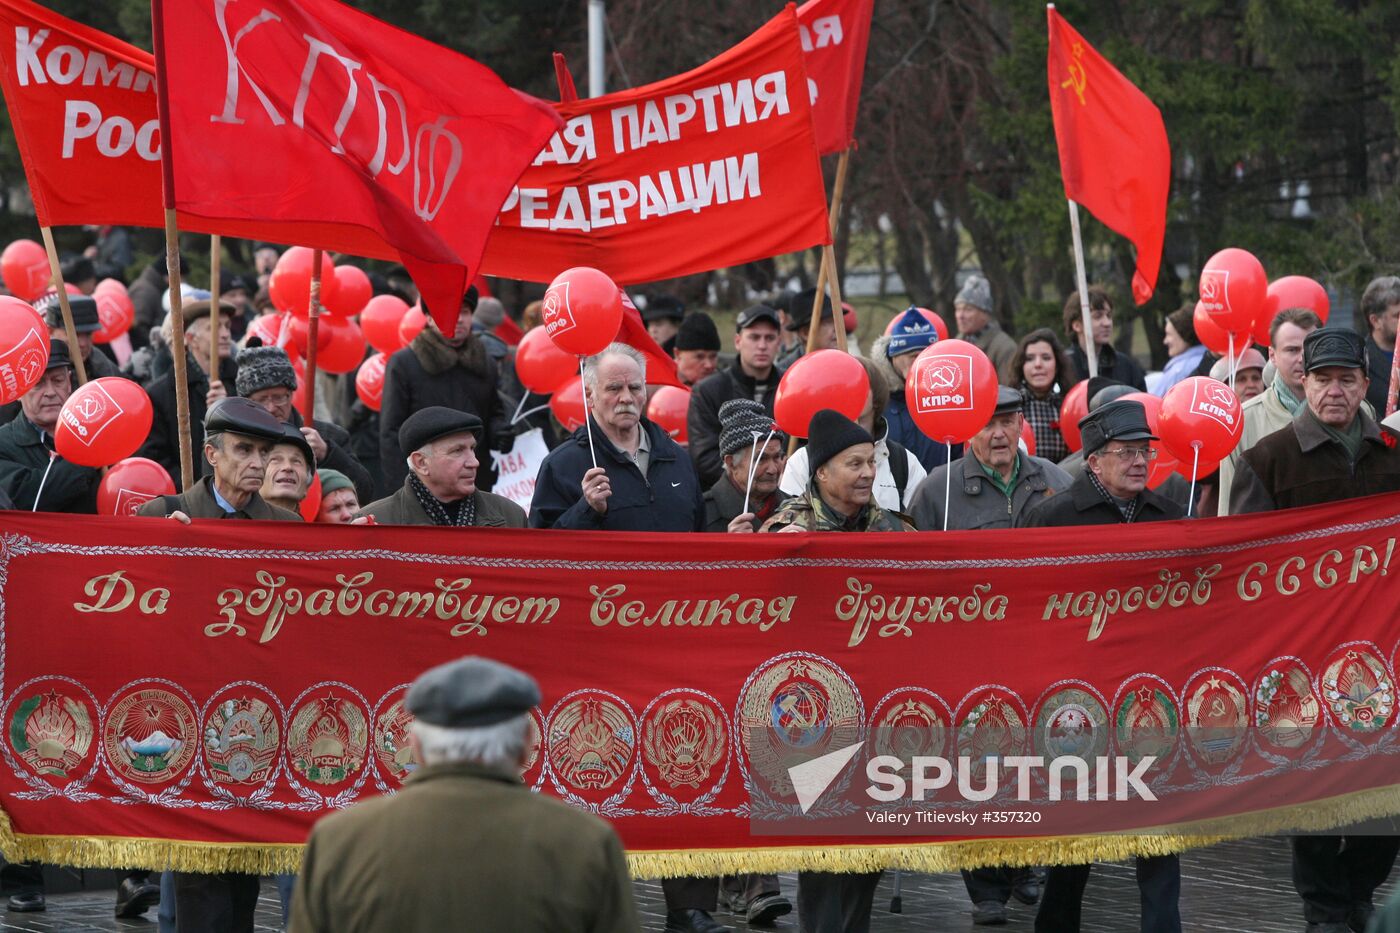 Communist rally in Novosibirsk